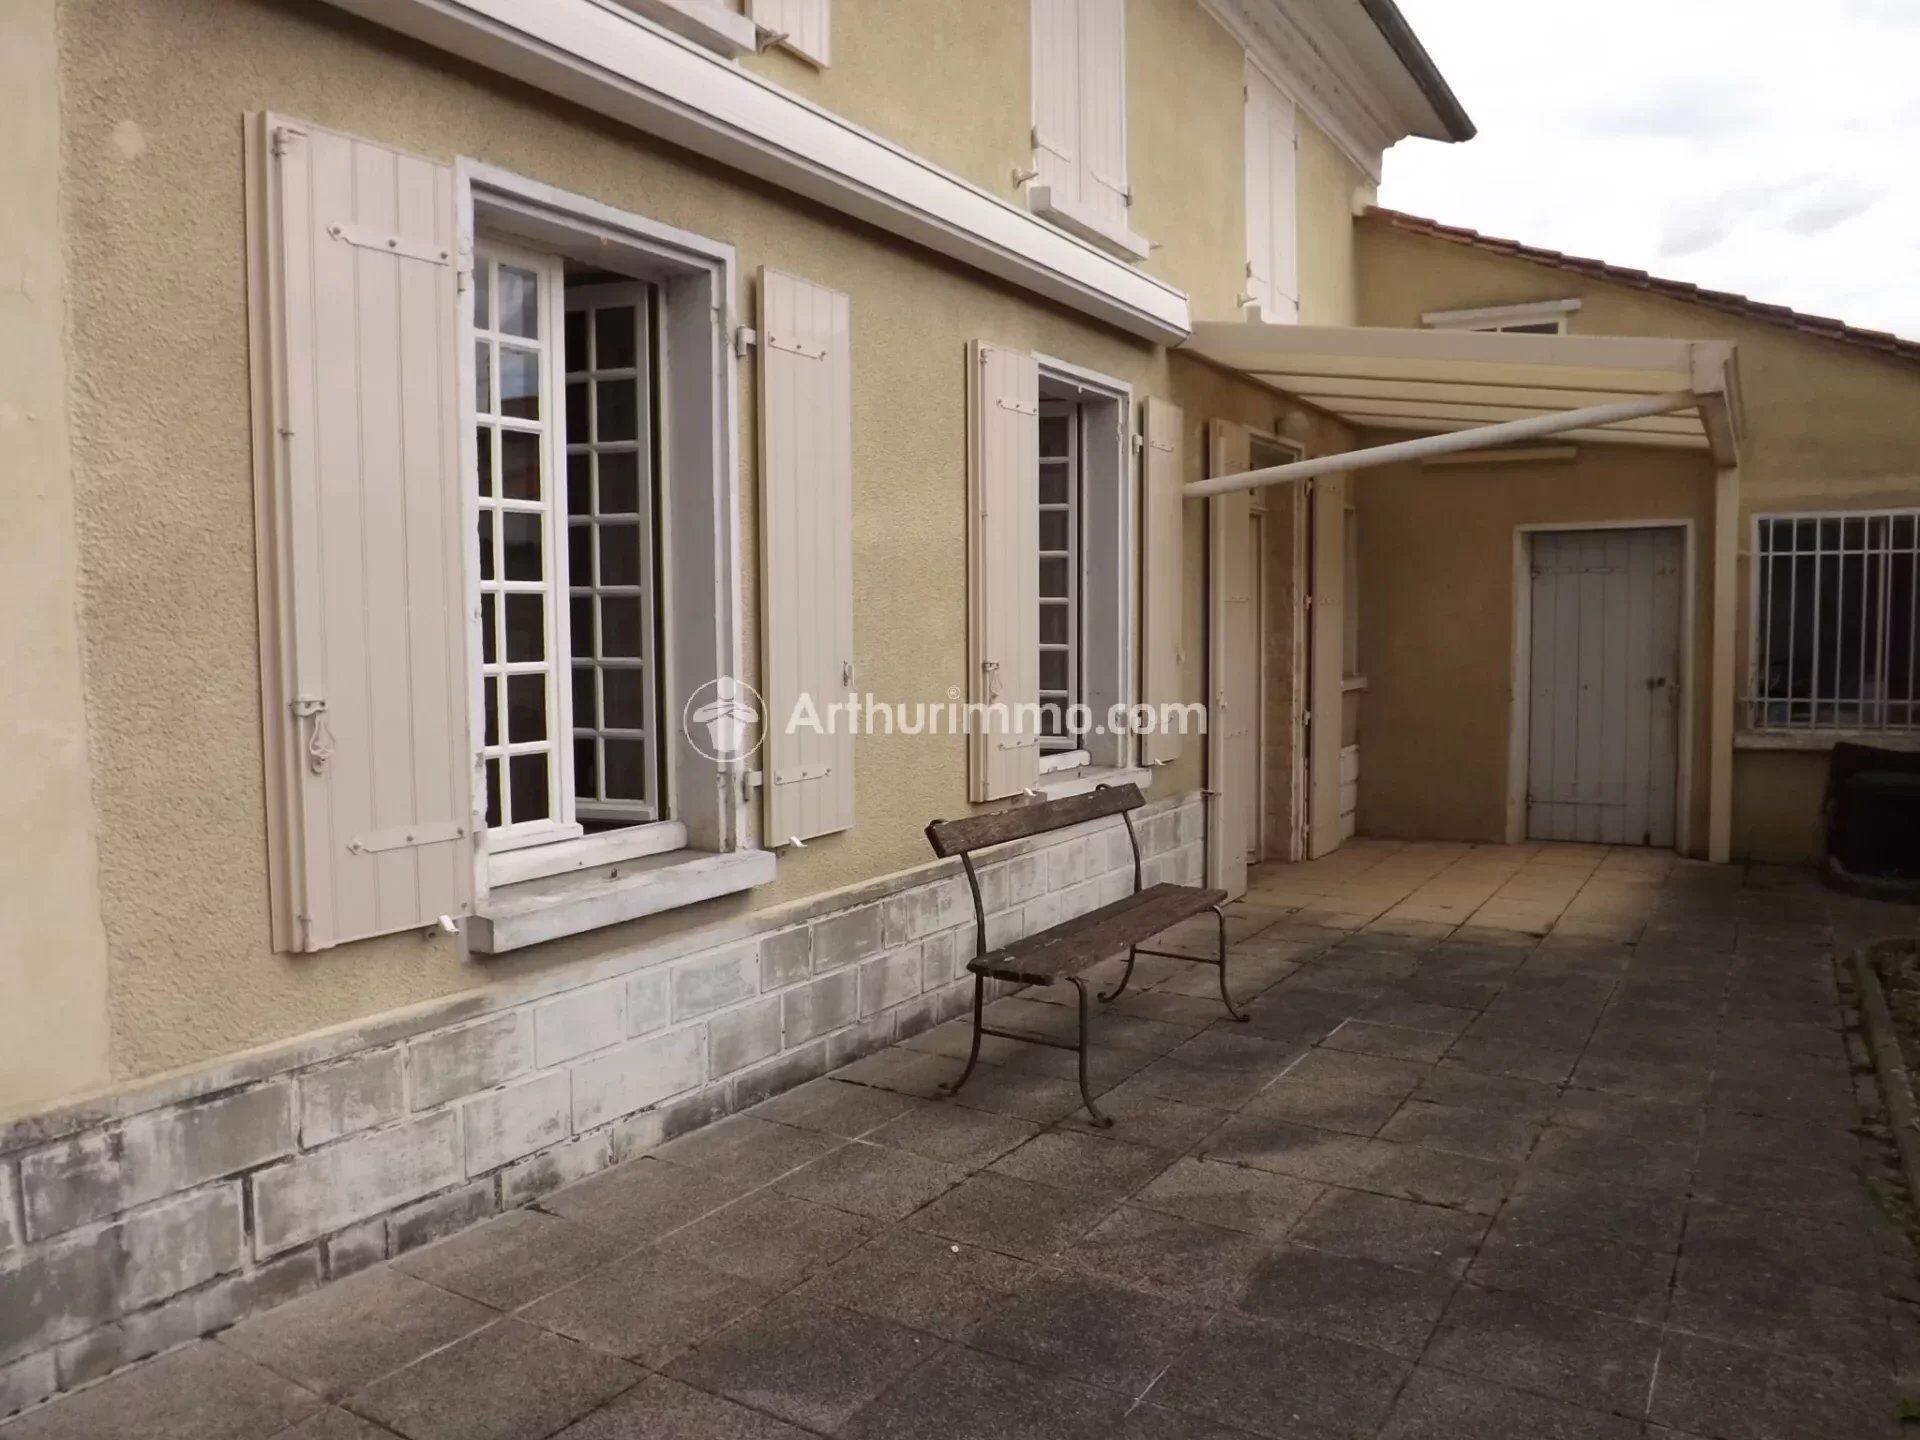 Vente Maison 144m² 6 Pièces à Saint-Jean-d'Angély (17400) - Arthurimmo